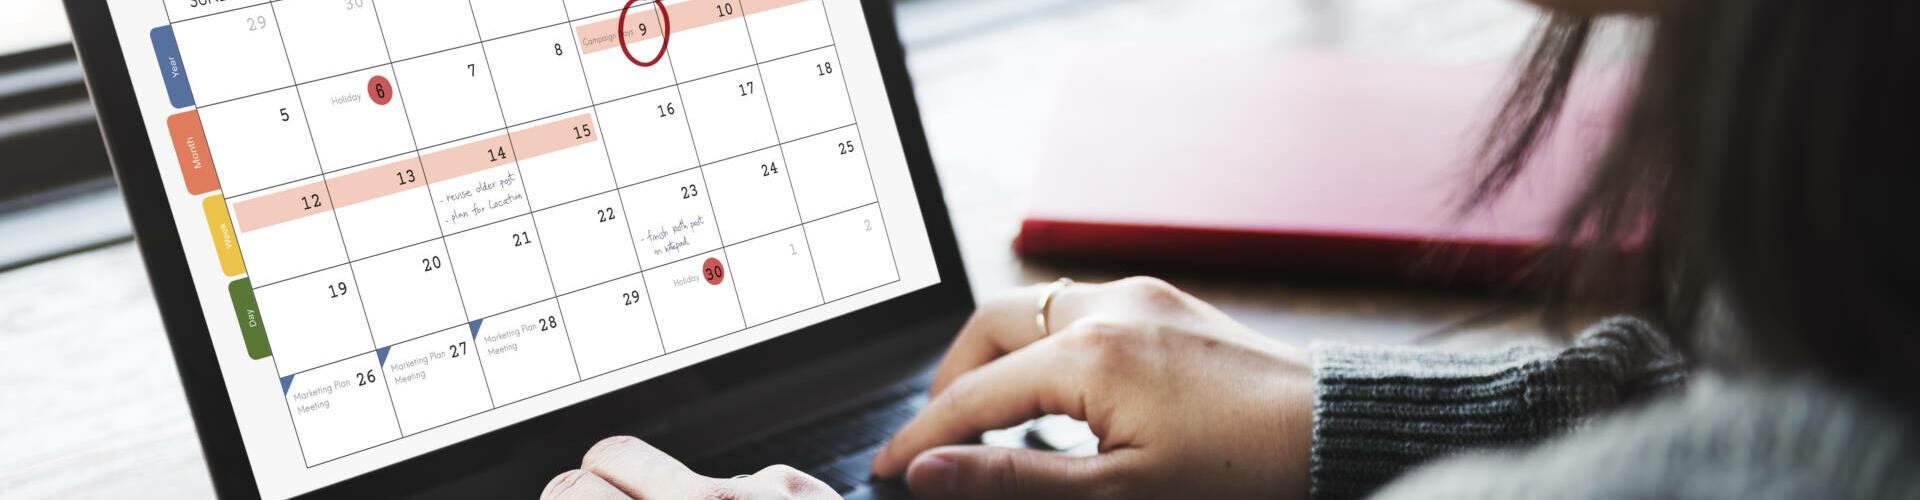 Frau markiert in ihrem Kalender die besten Zeitpunkte für Jobwechsel und Bewerbung